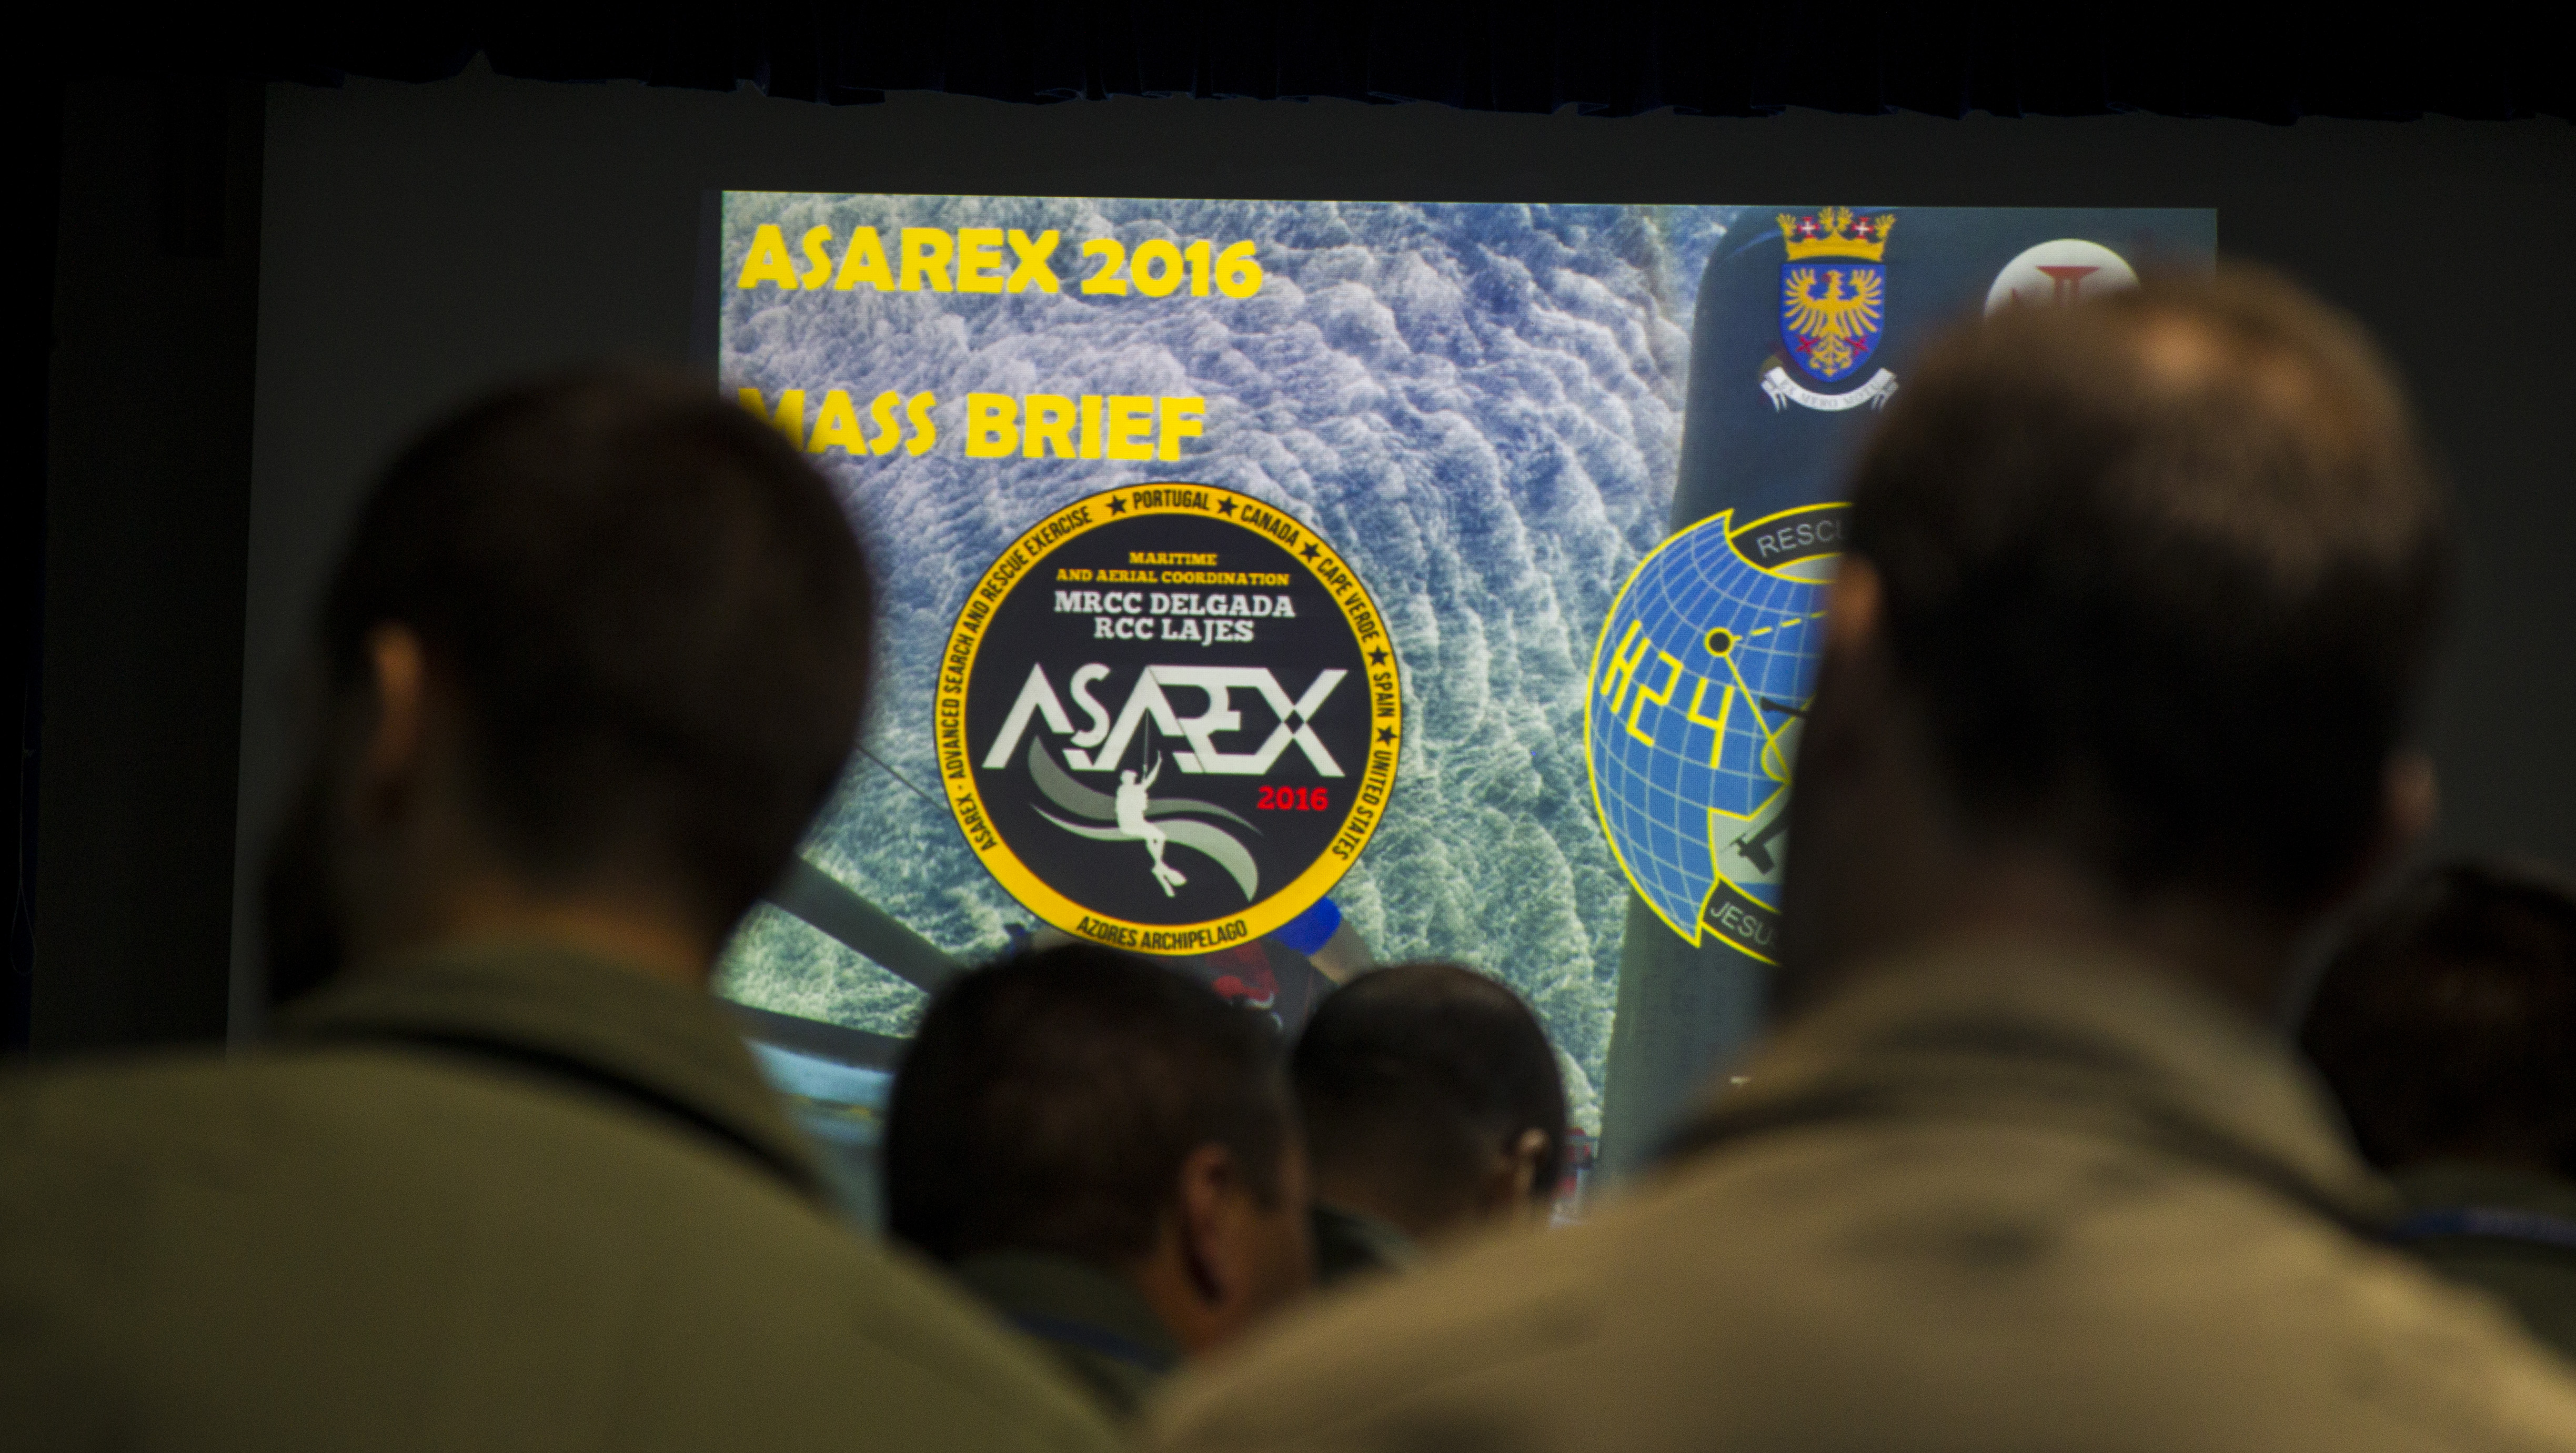 Participantes do ASAREX recebem Mass Brief